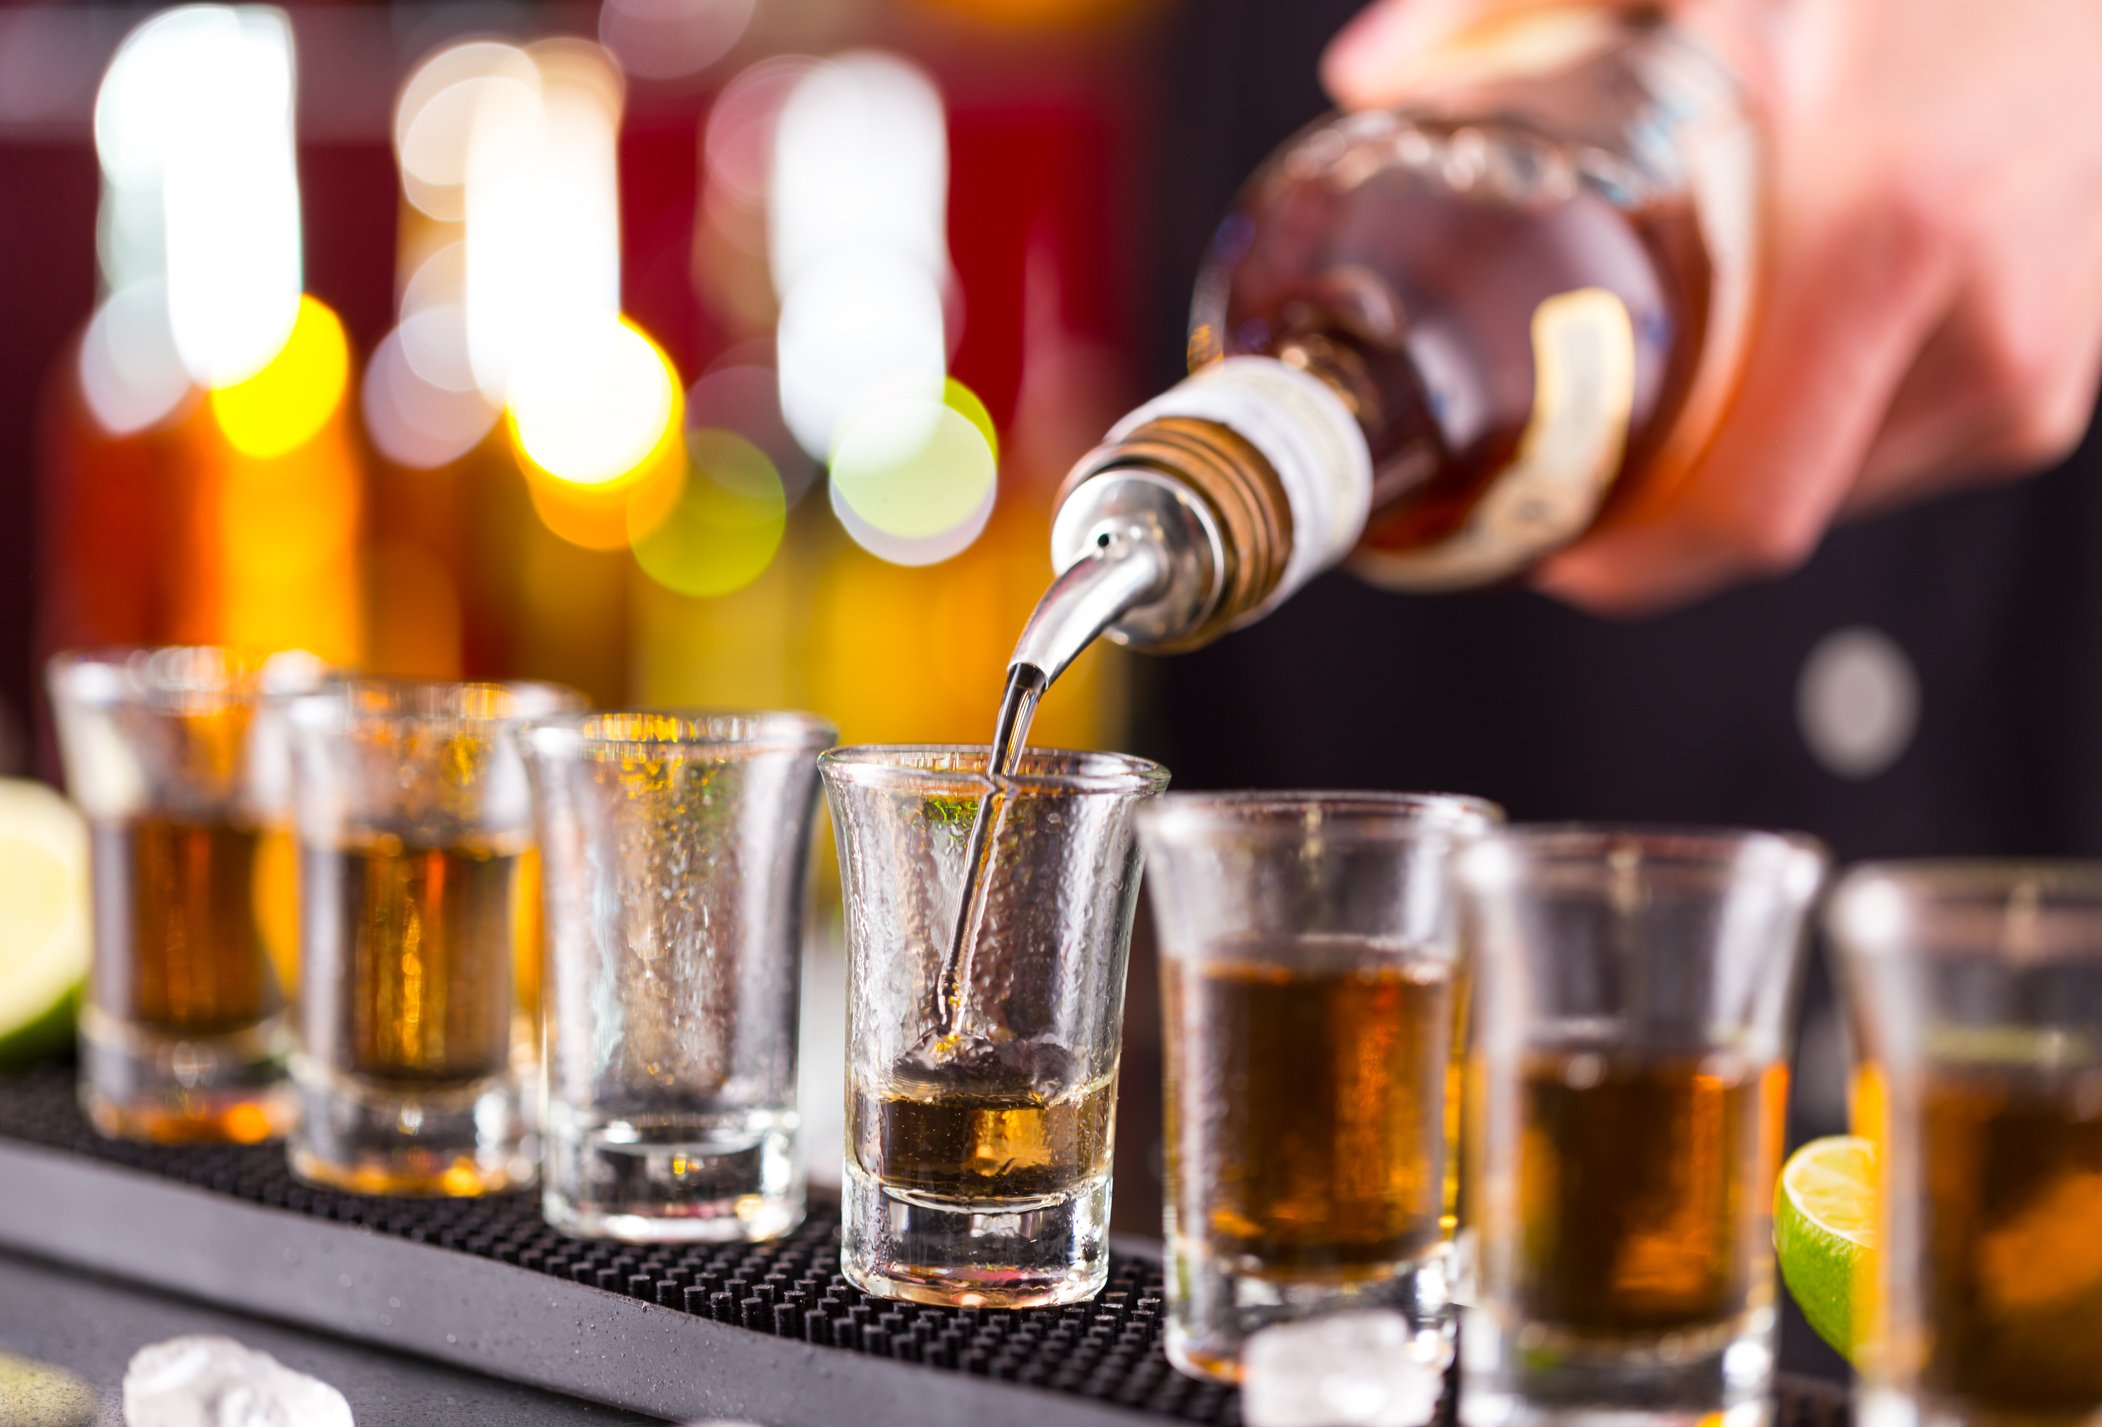 Los bares y restaurantes que atienden en exceso a clientes ebrios pueden ser responsables de las lesiones causadas por DUI.